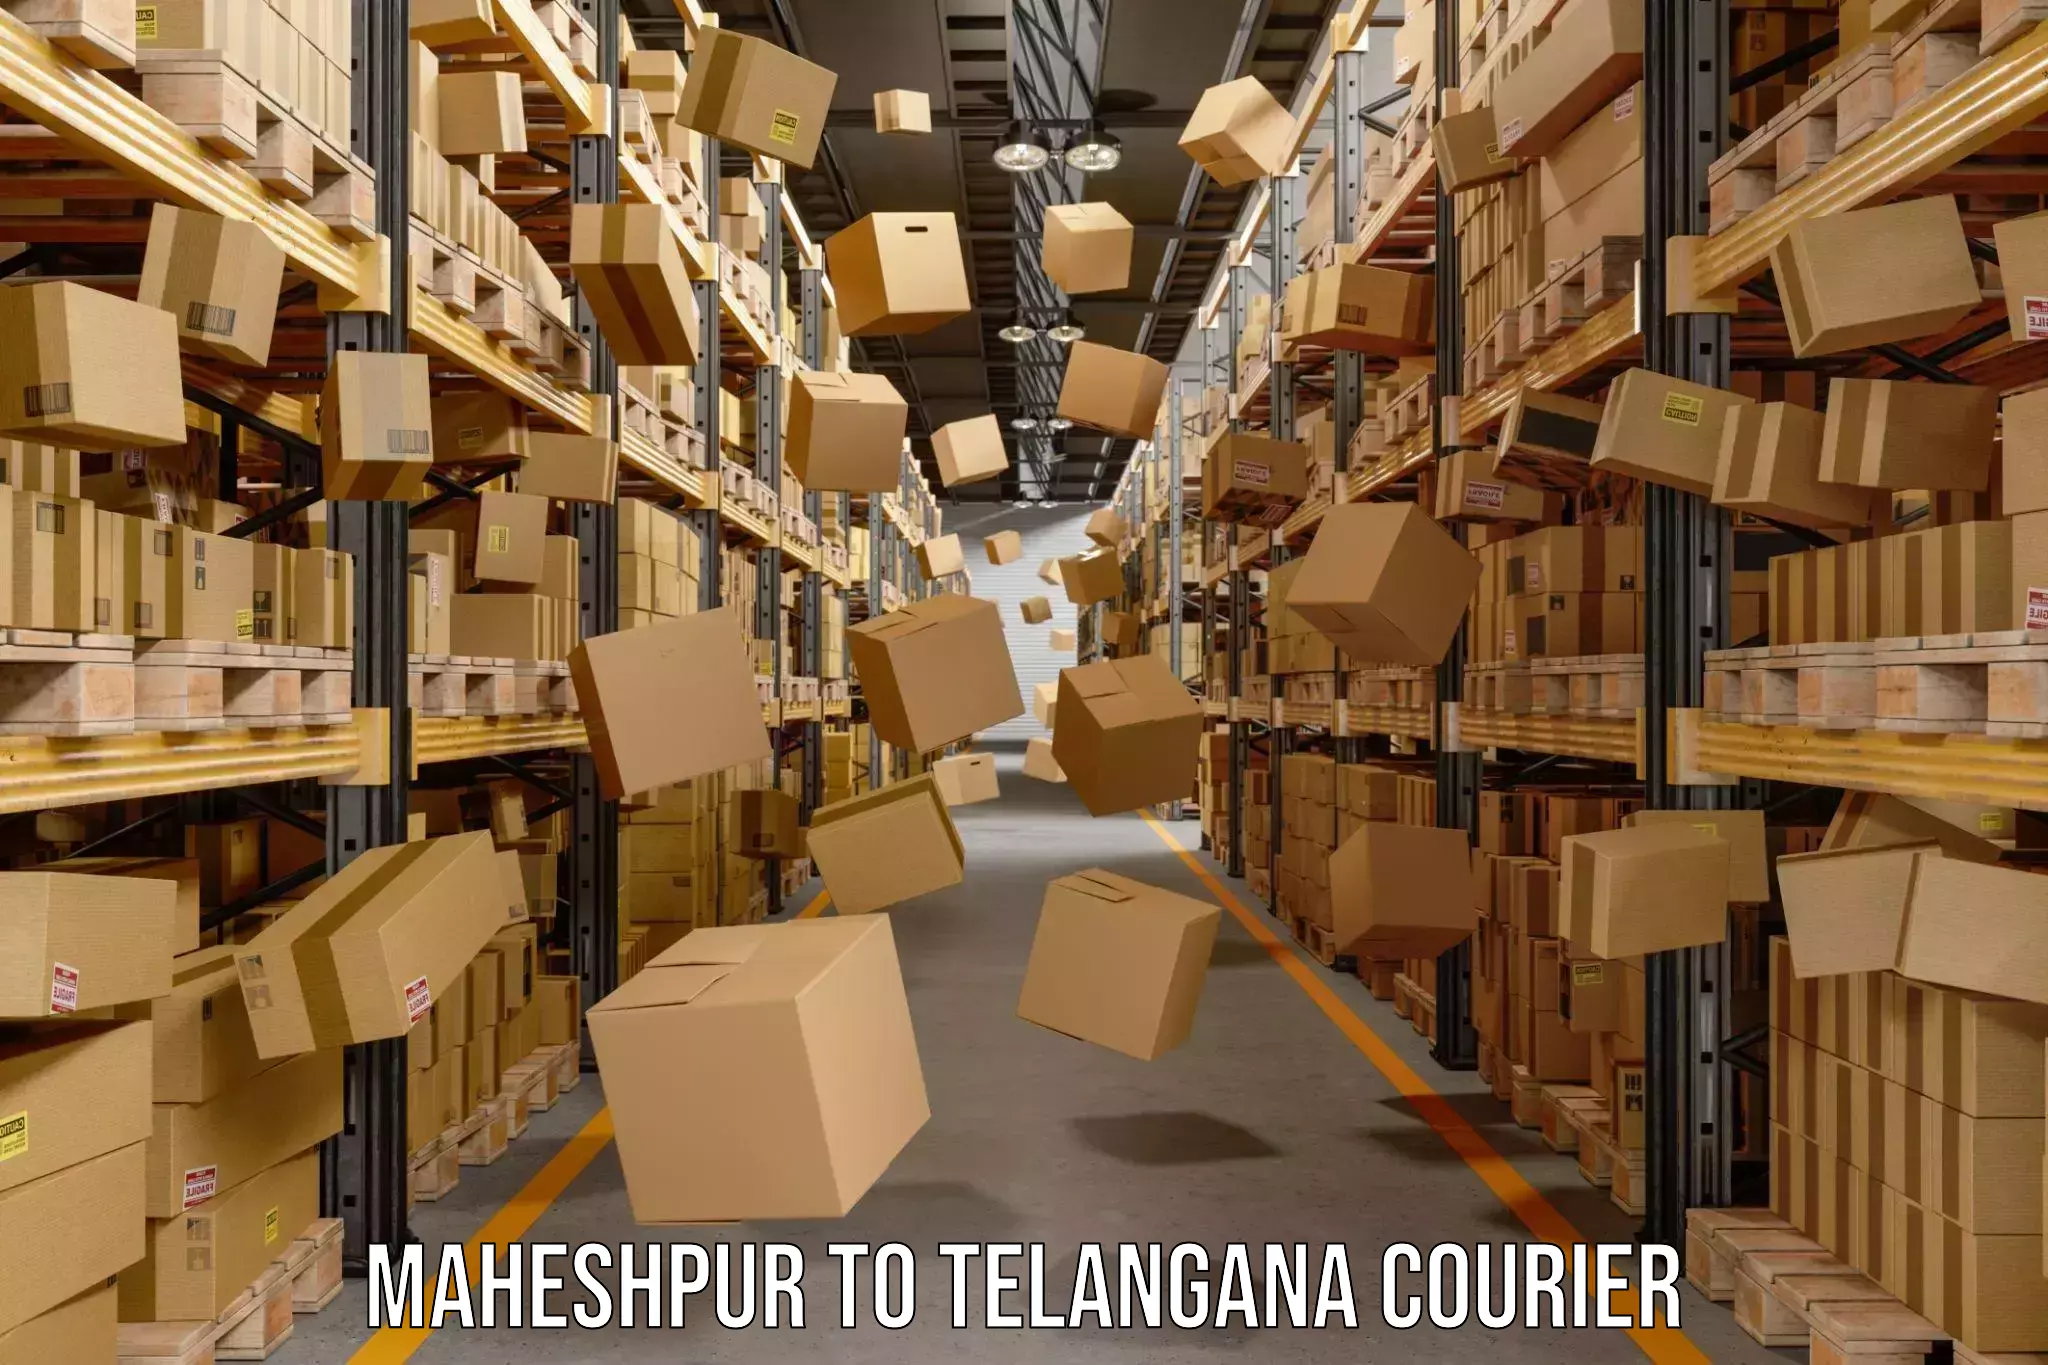 Custom courier packaging Maheshpur to Yellandu